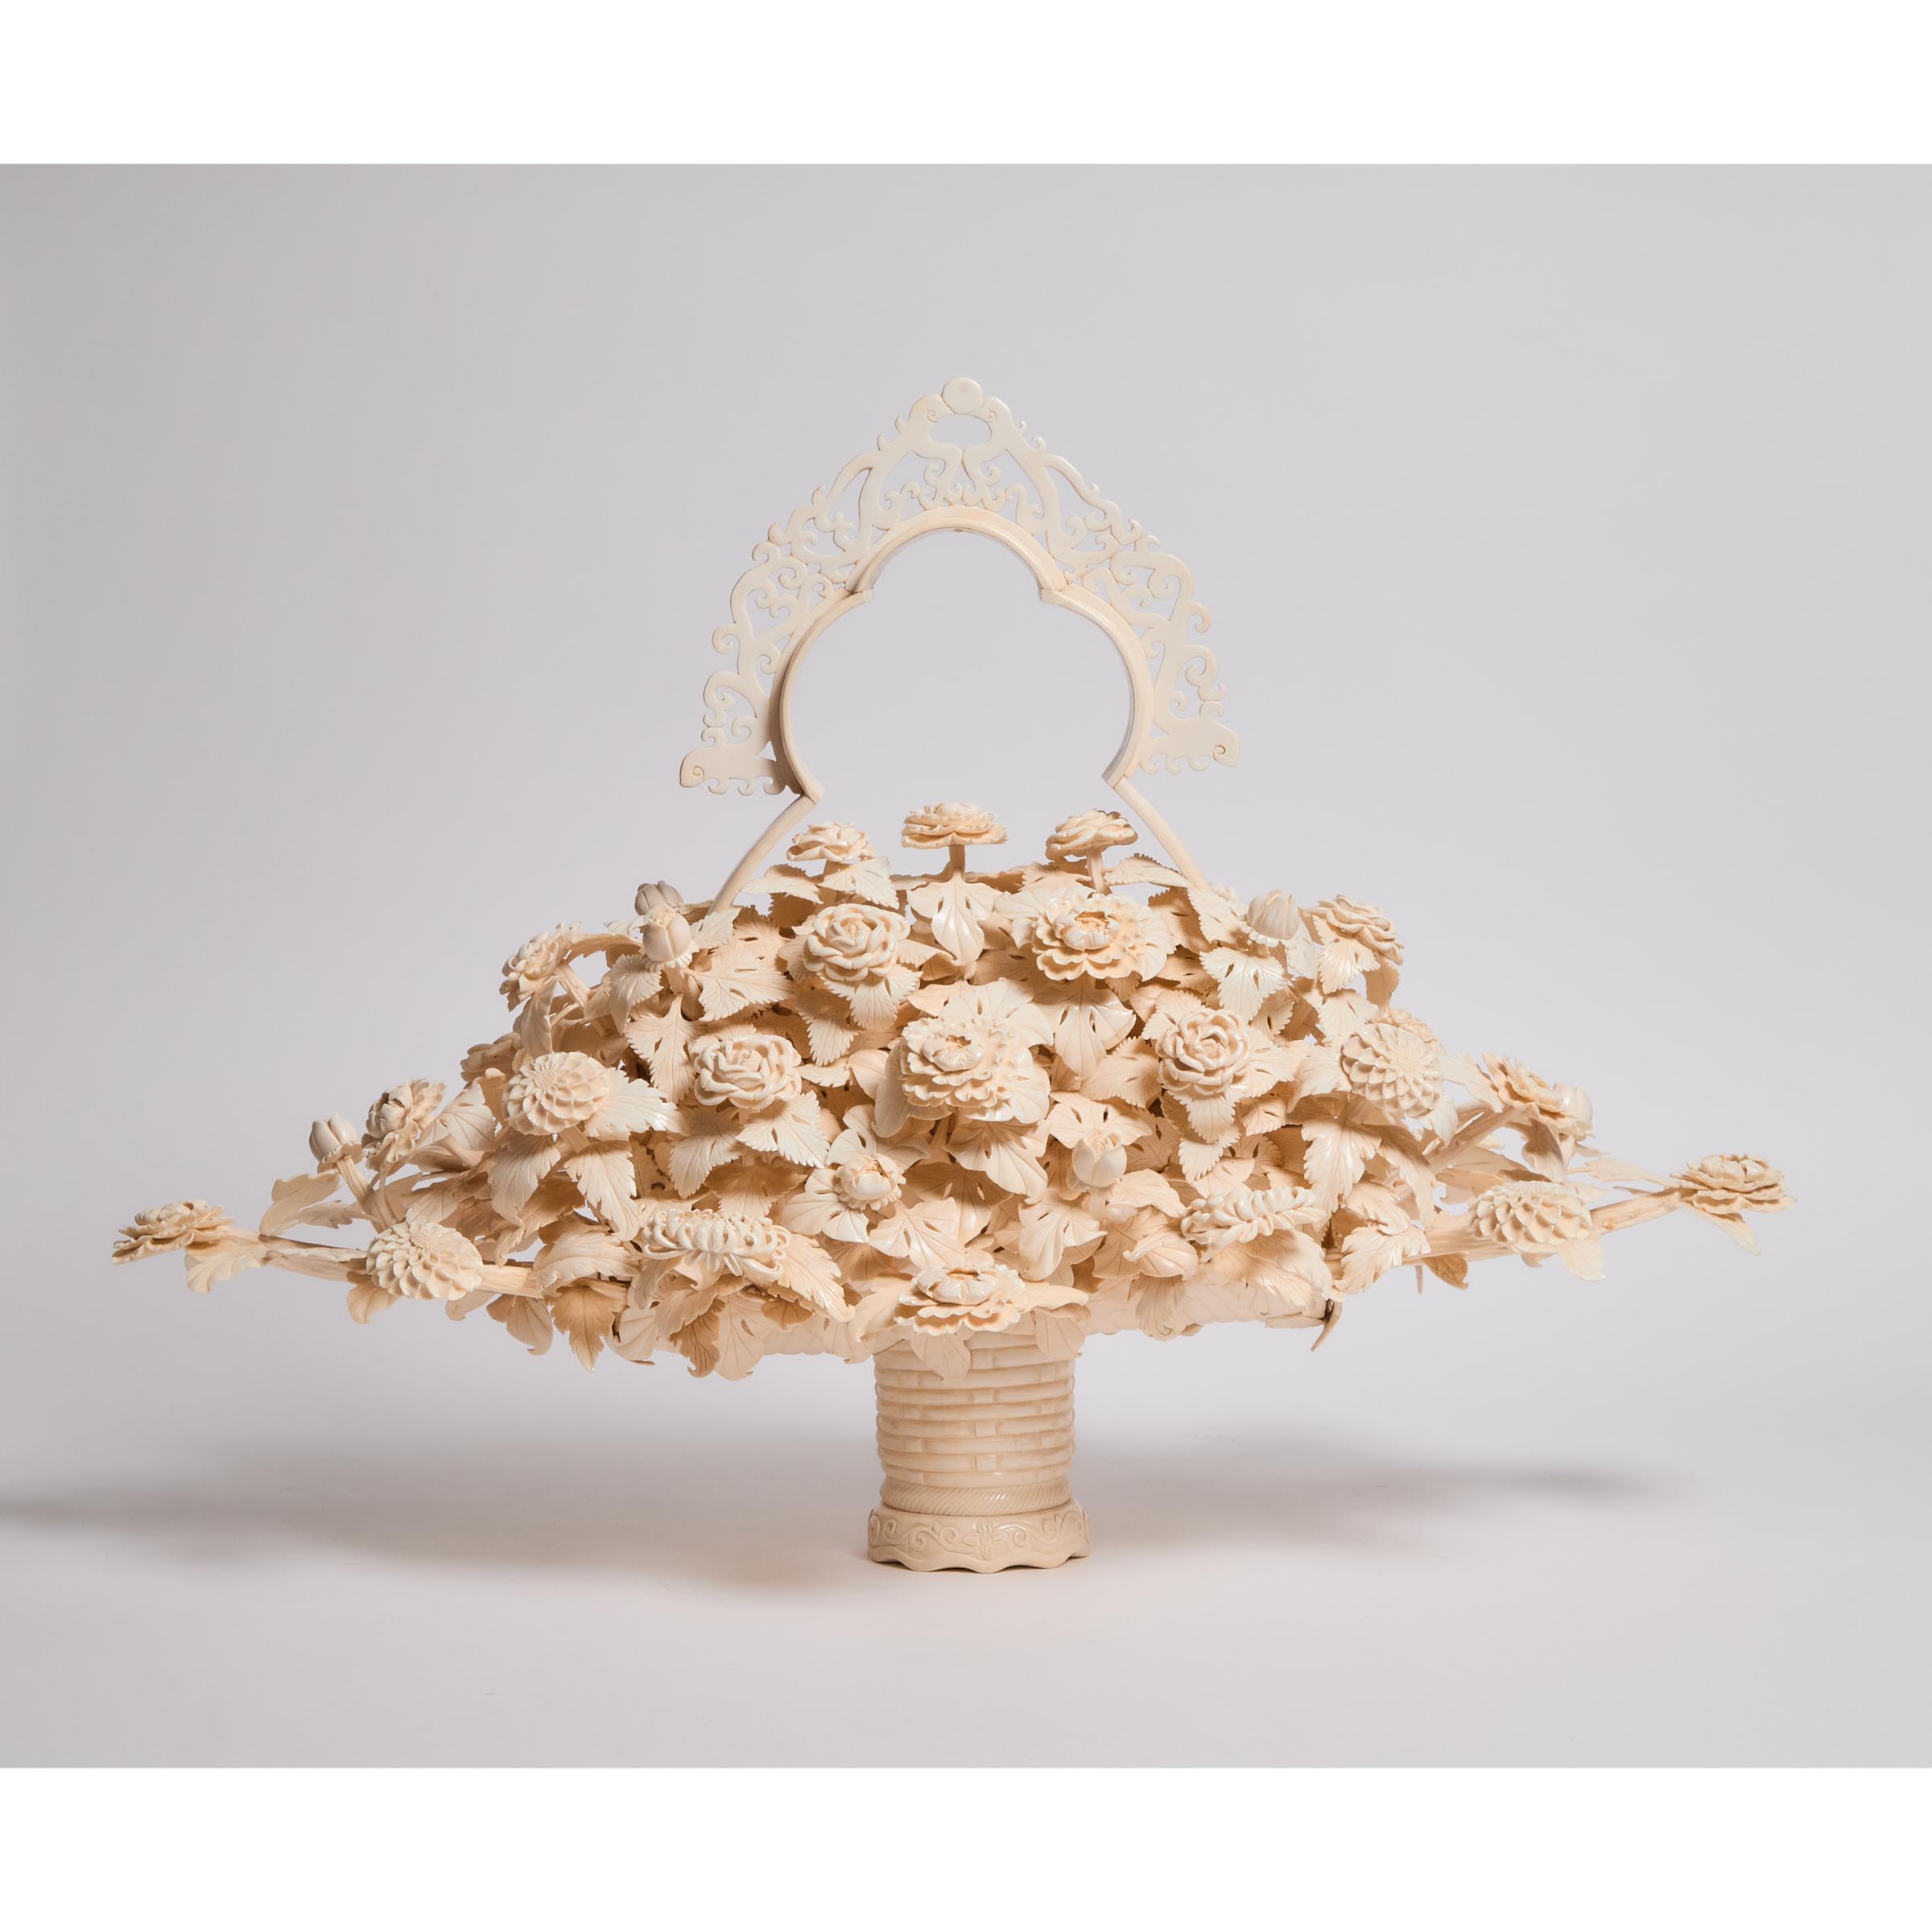 A Large Ivory Carved Flower Arrangement,